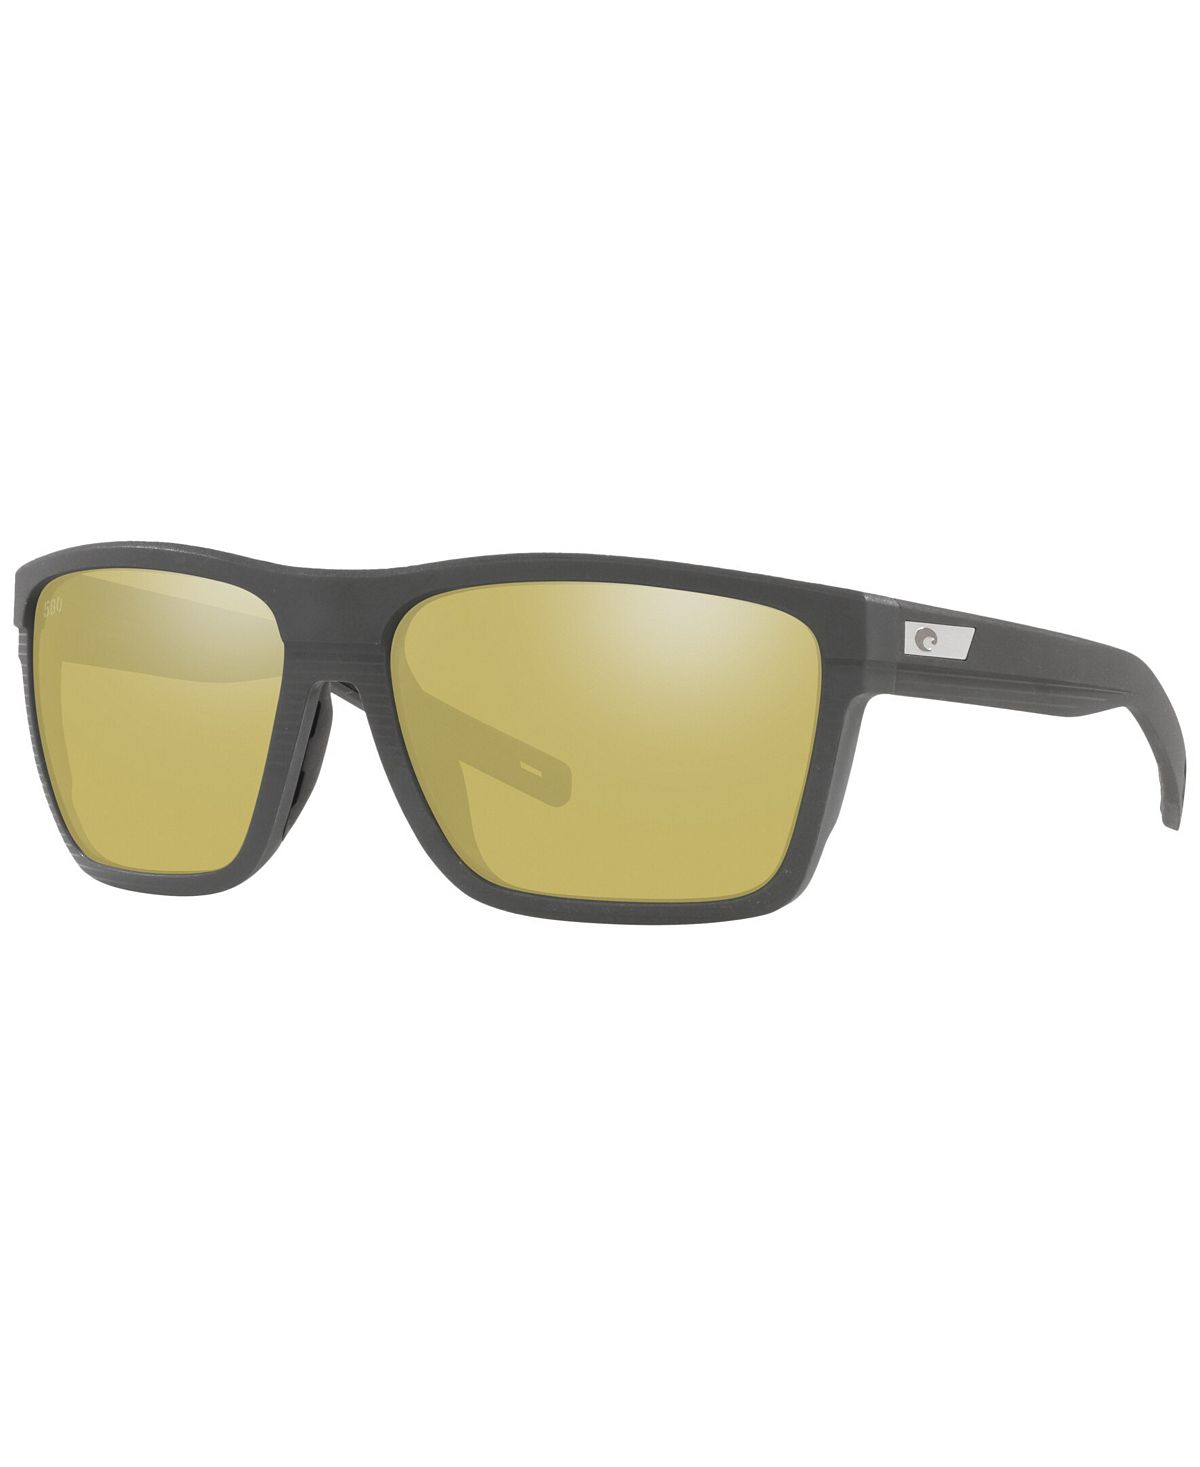 цена Мужские поляризованные солнцезащитные очки, Pargo 61 Costa Del Mar